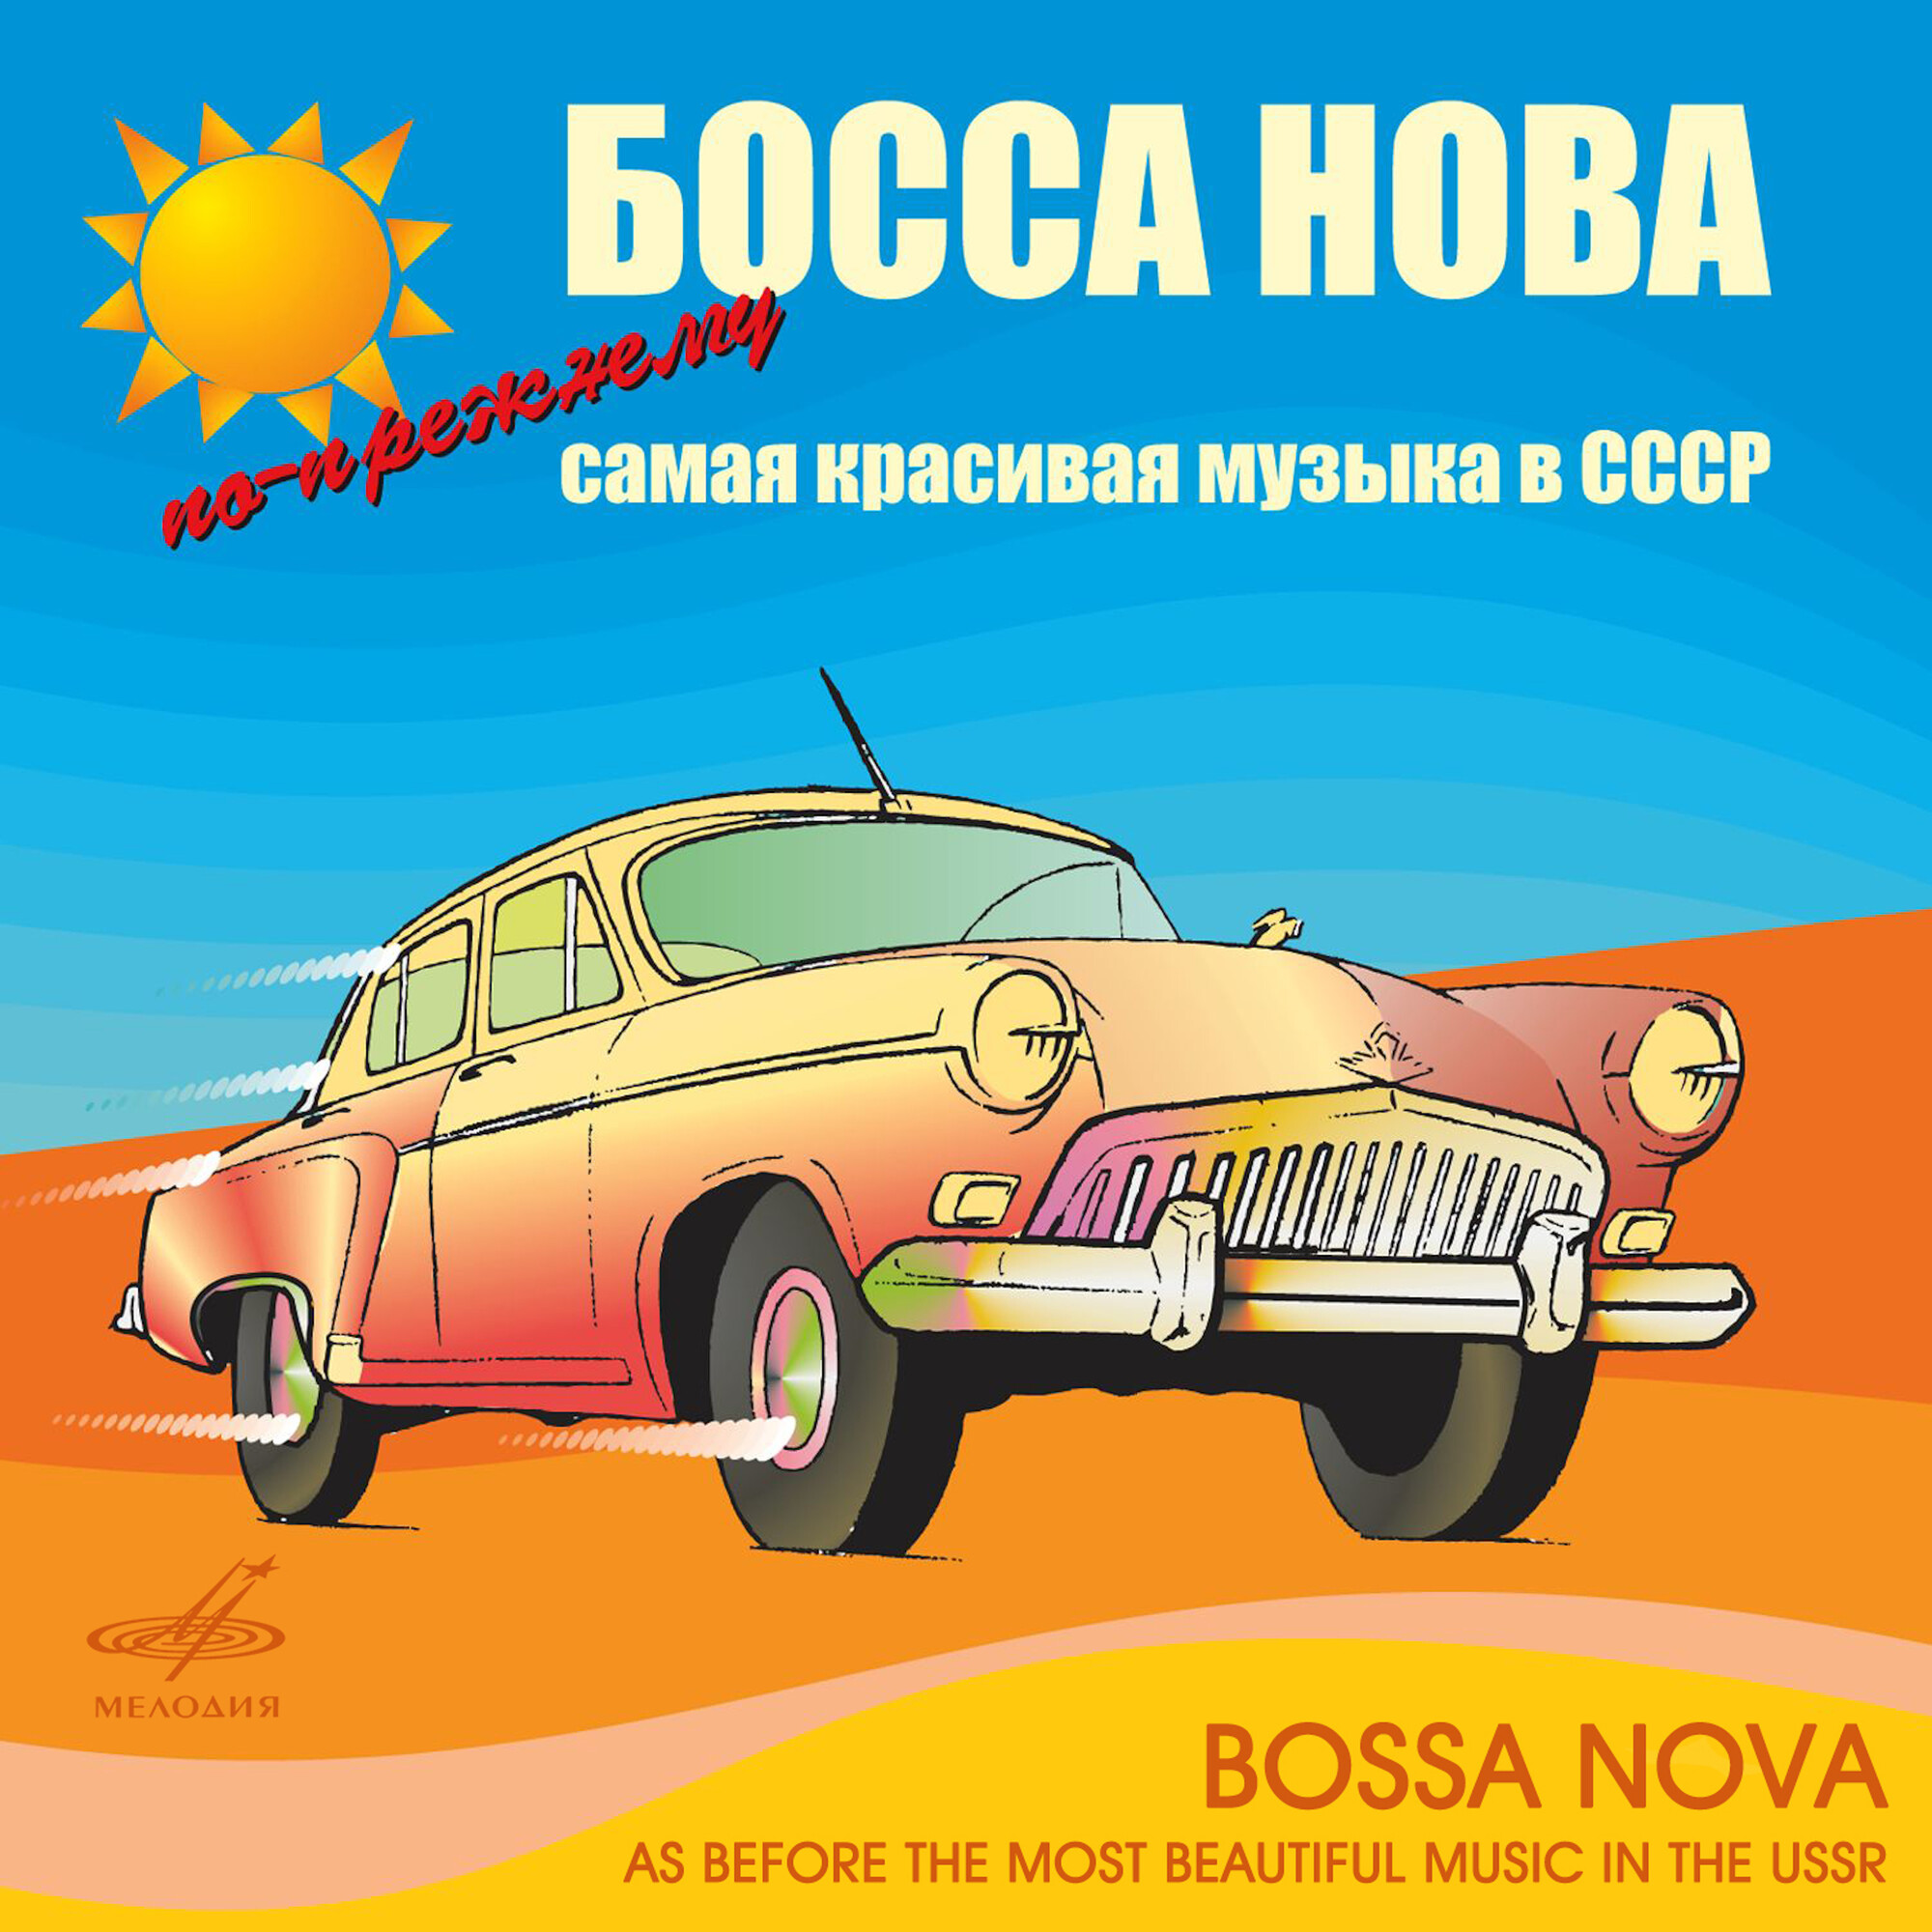 Босса нова! По-прежнему самая красивая музыка в СССР